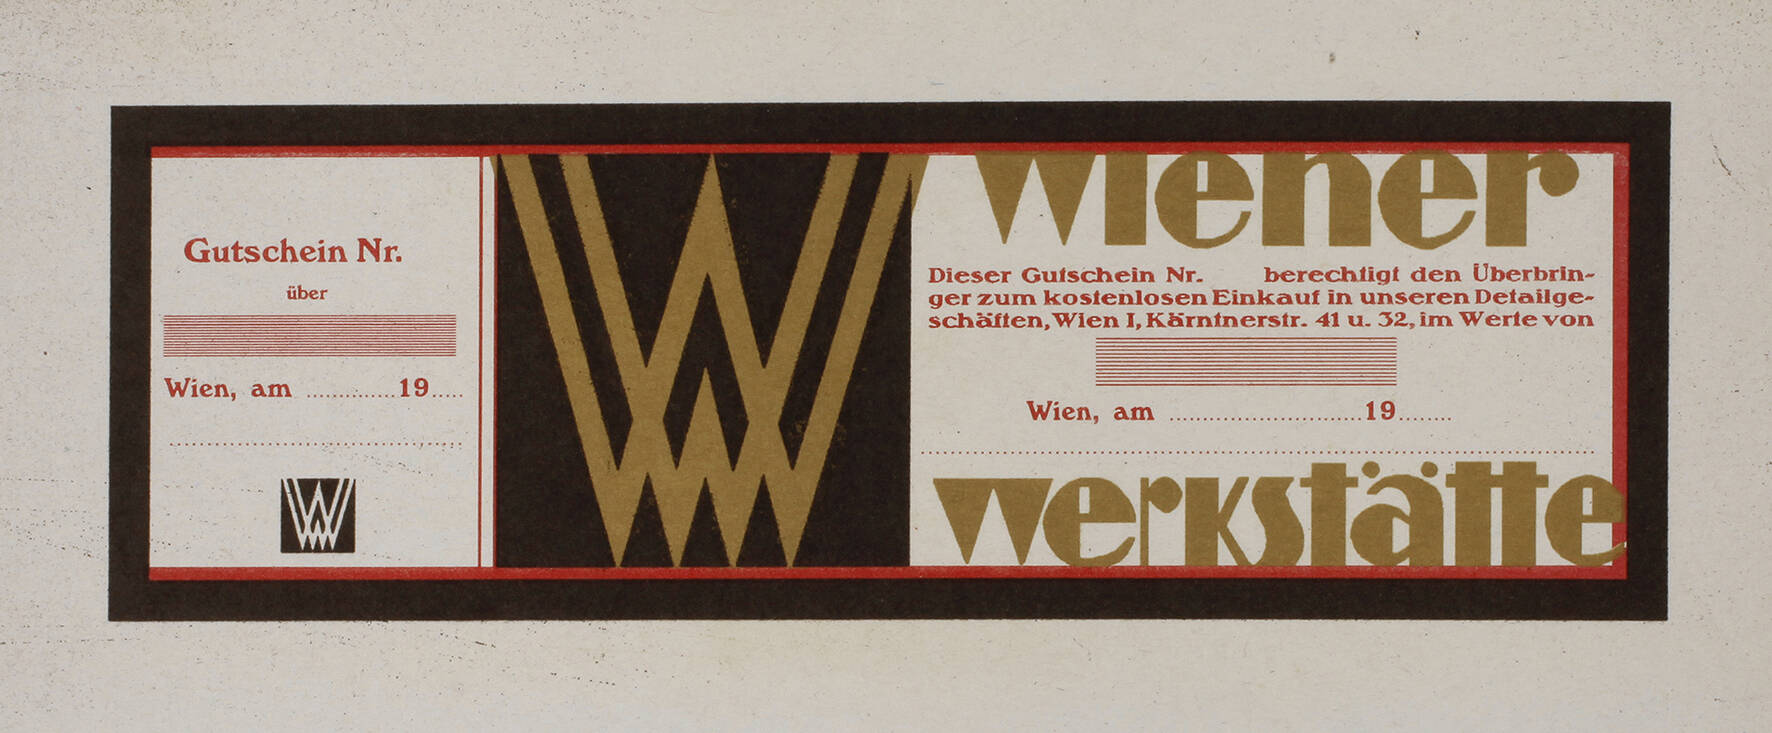 Seltener Gutschein der Wiener Werkstätte